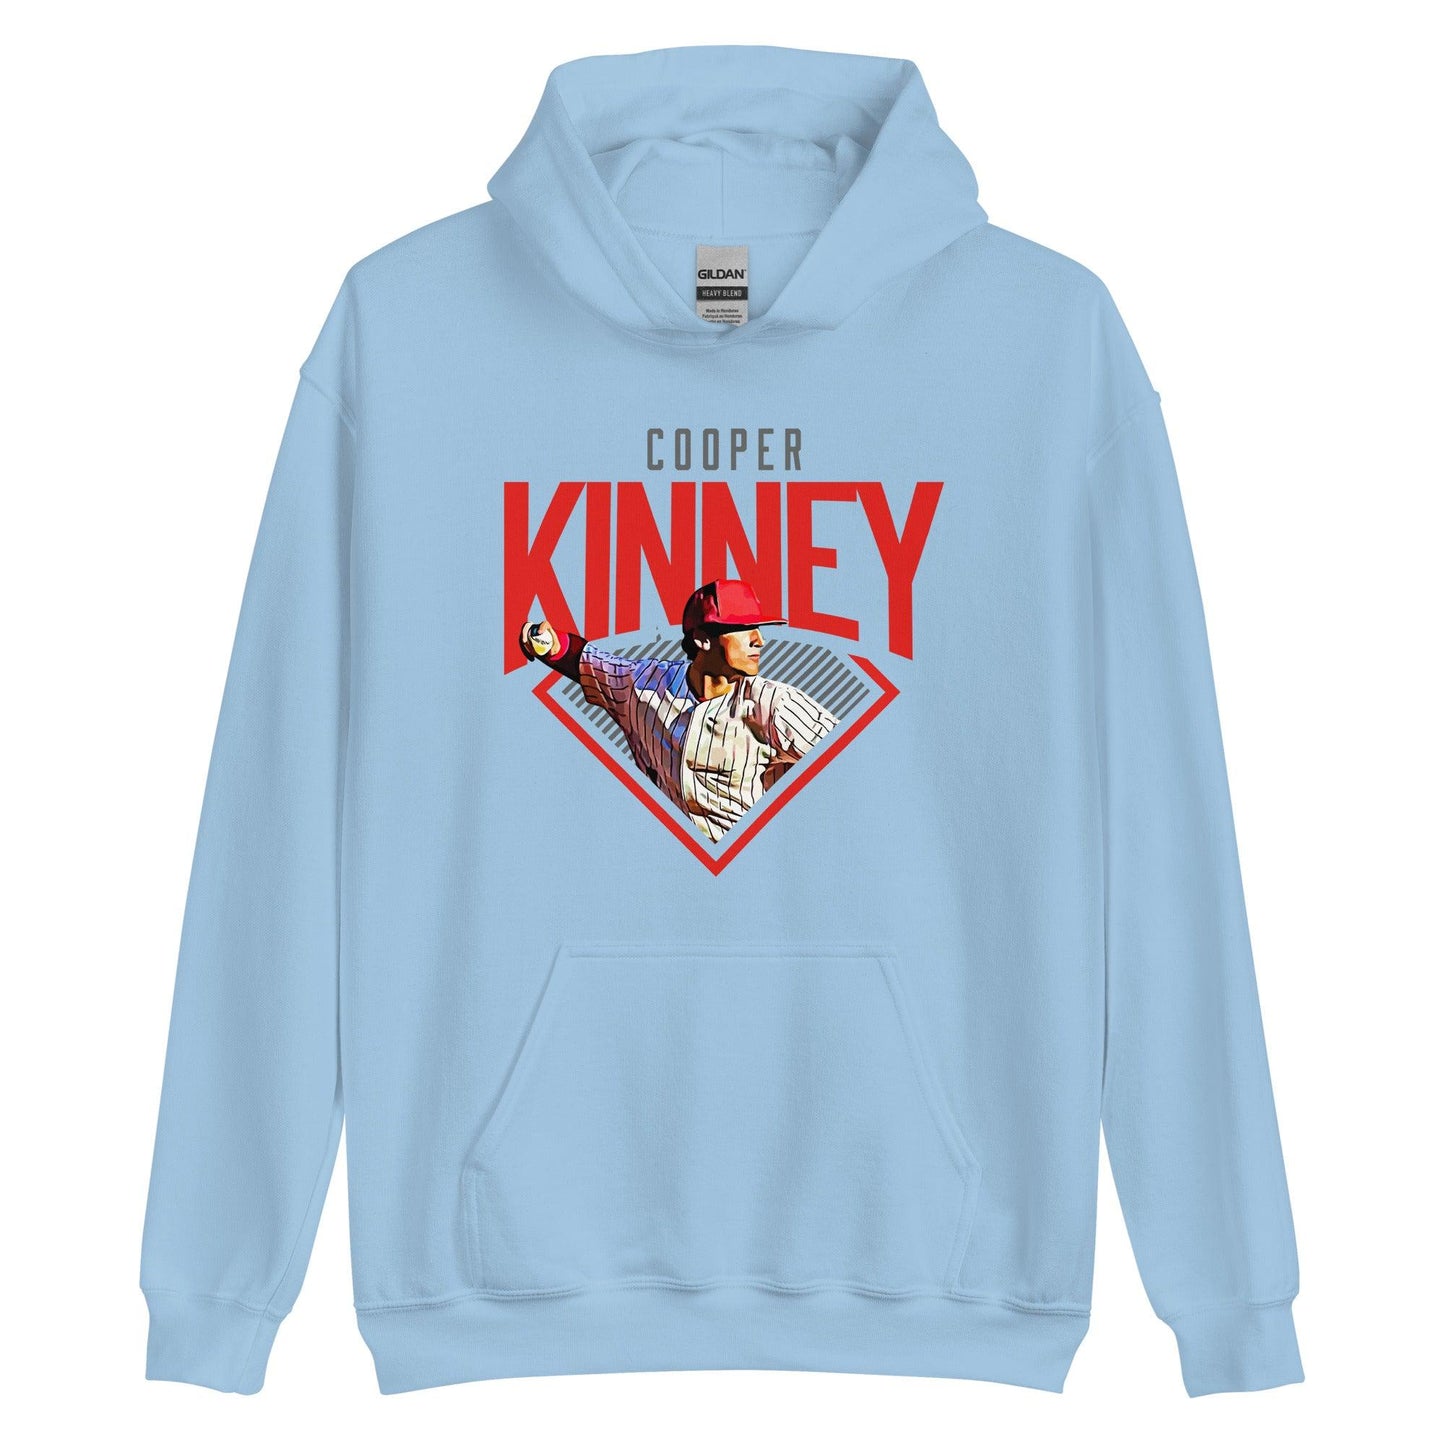 Cooper Kinney "Diamond" Hoodie - Fan Arch